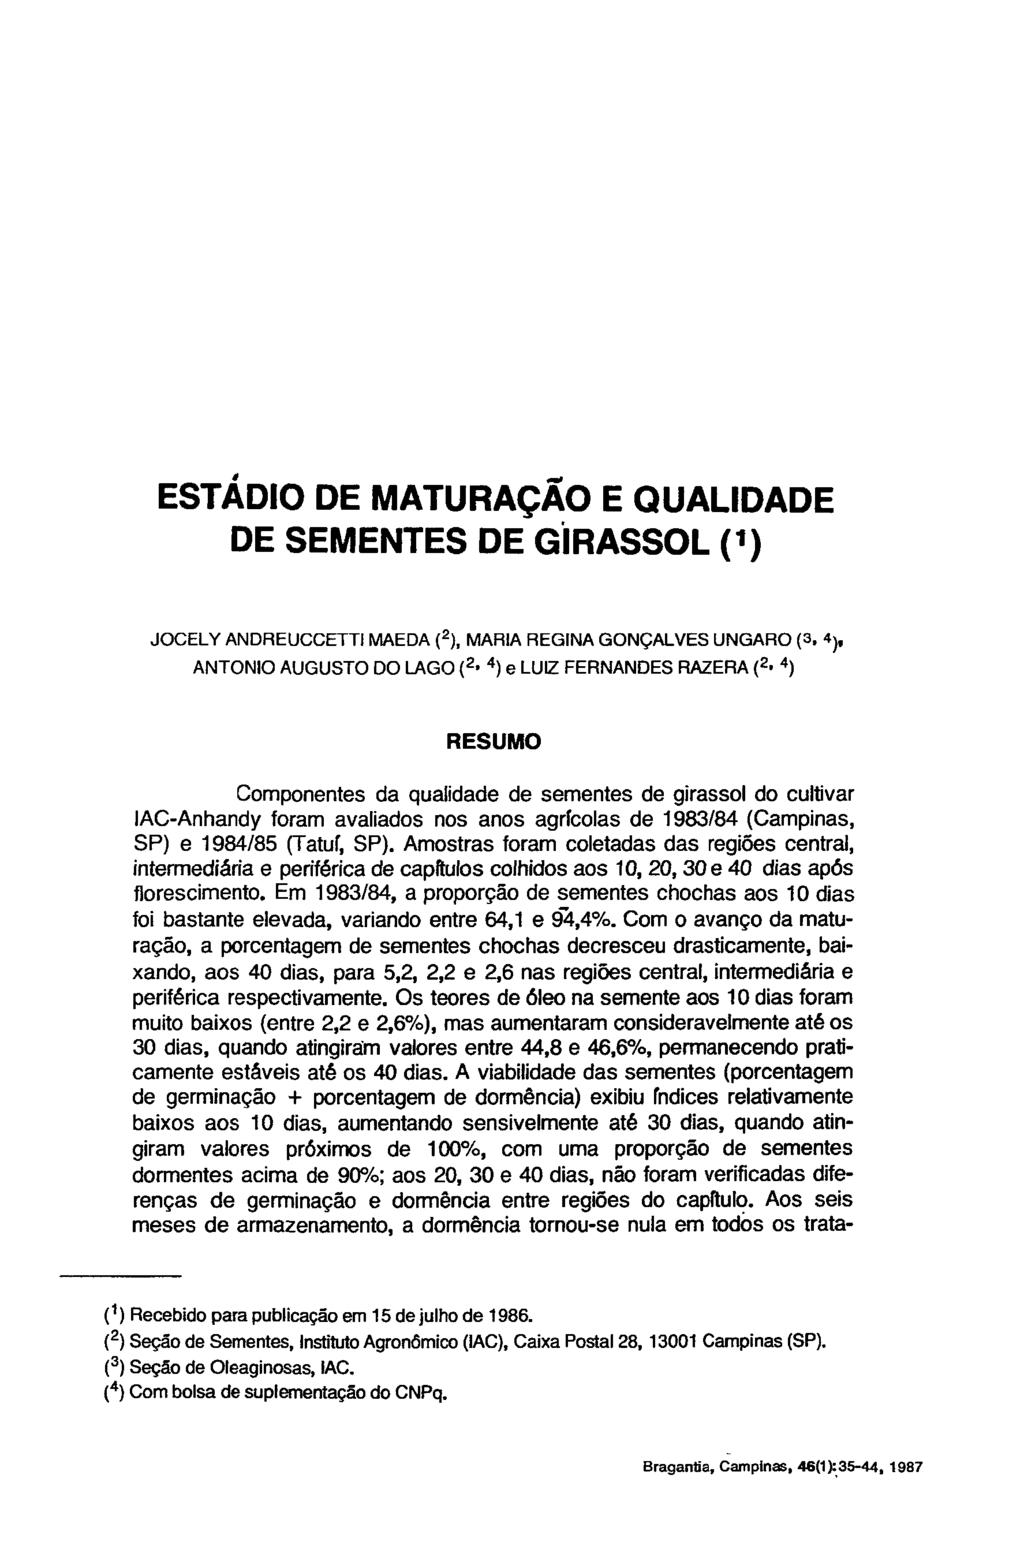 ESTÁDIO DE MATURAÇÃO E QUALIDADE DE SEMENTES DE GIRASSOL ( 1 ) JOCELY ANDREUCCETTI MAEDA ( 2 ), MARIA REGINA GONÇALVES UNGARO (3.